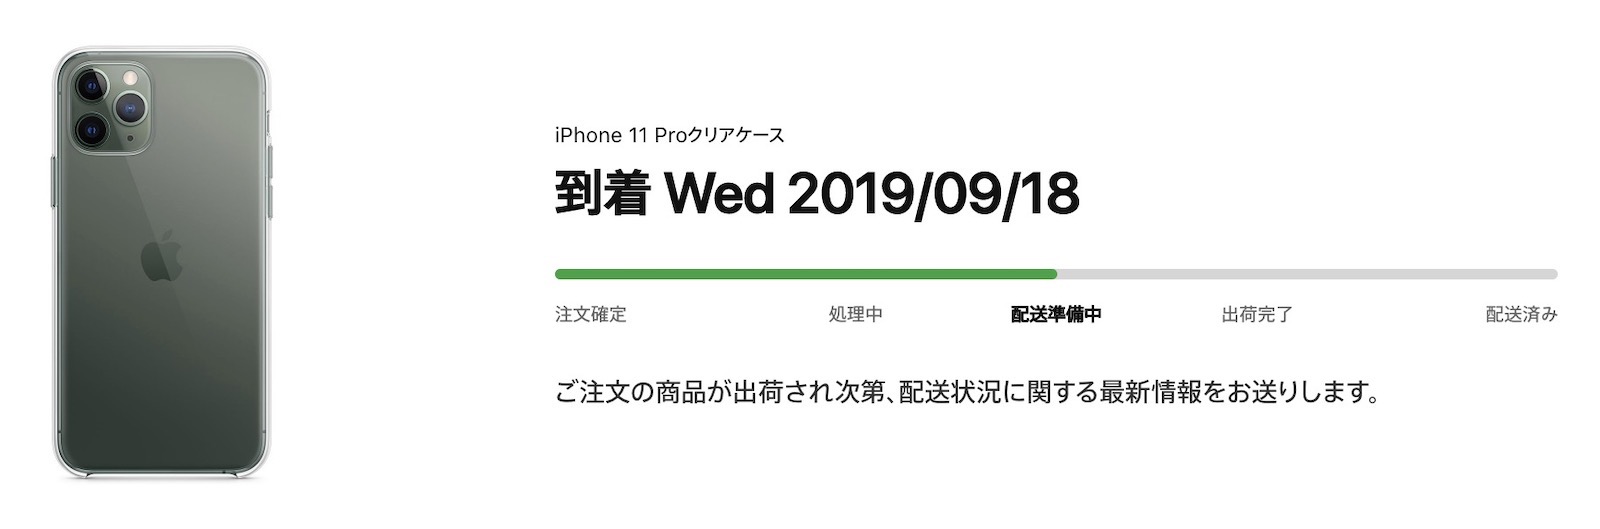 iPhone 11 Pro クリアケース